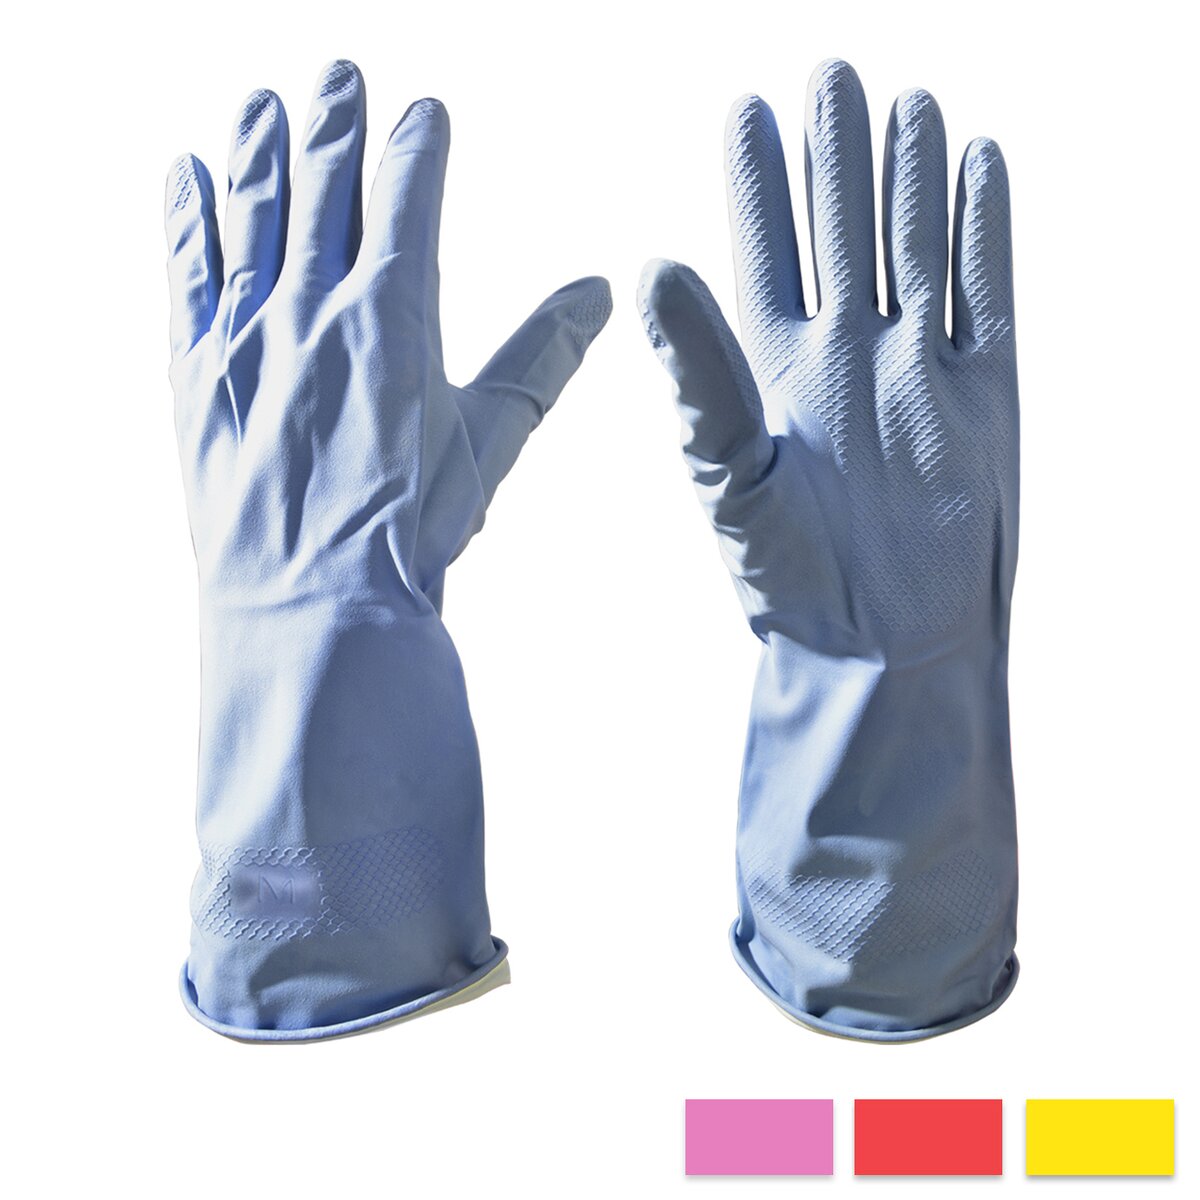 Gumové rukavice M (akční sada 5 ks)